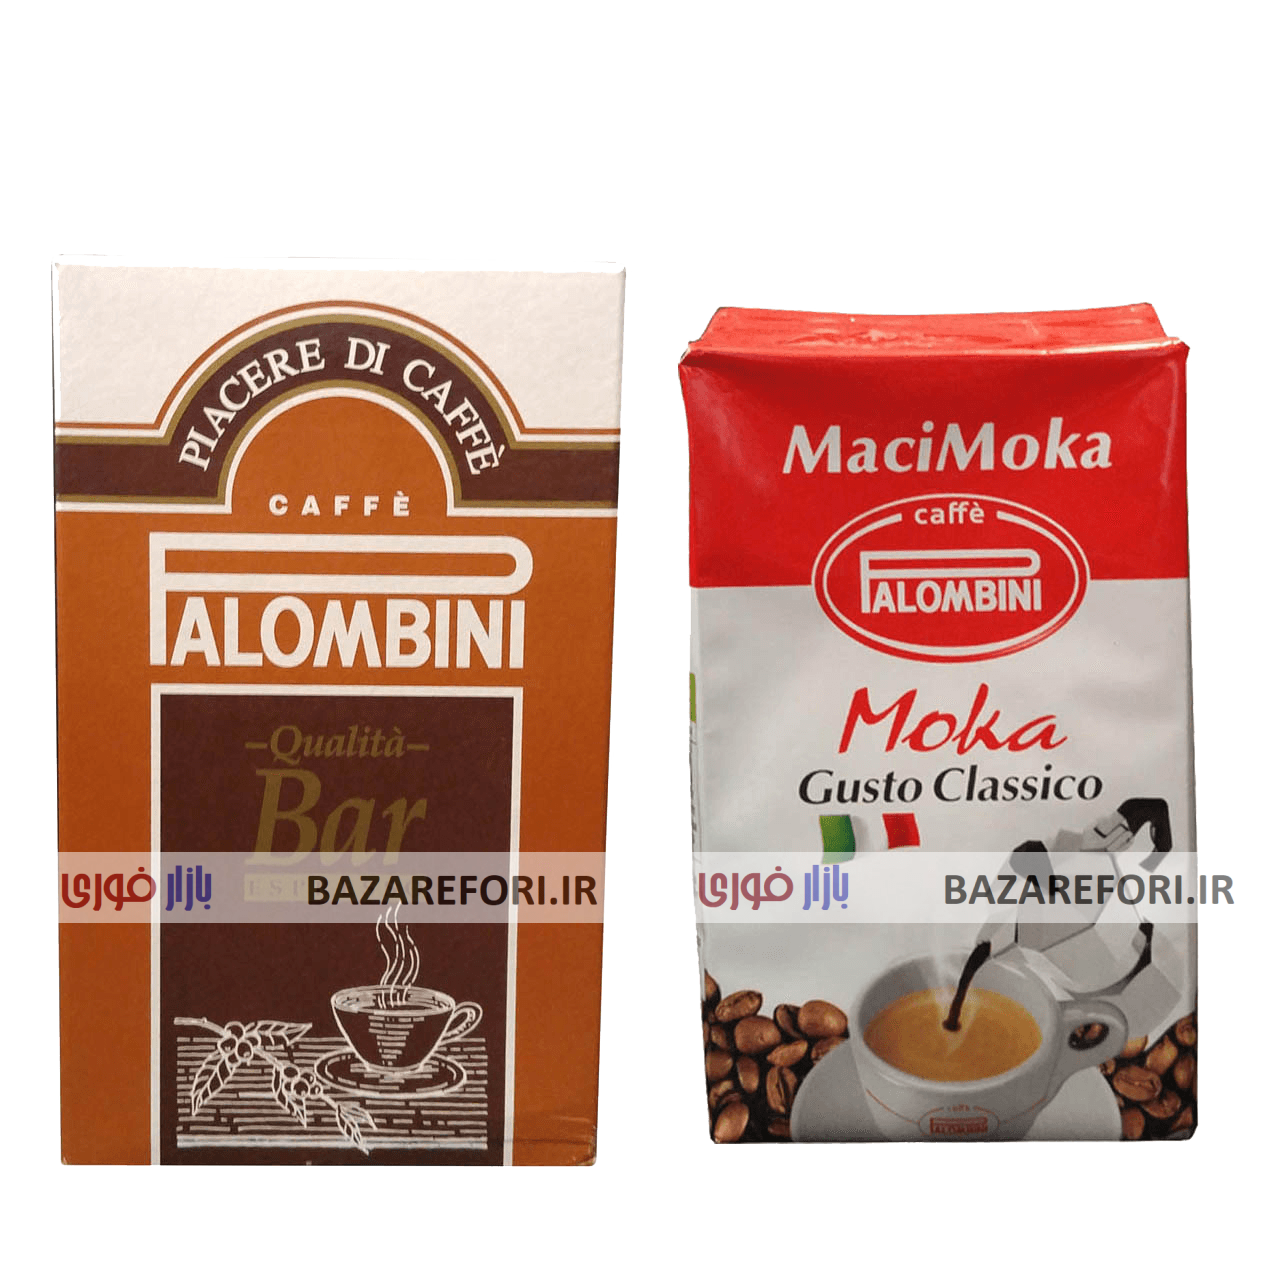 پودر قهوه پالومبینی مدل MaciMoka به همراه پودر قهوه پالومبینی مدل Bar Espresso